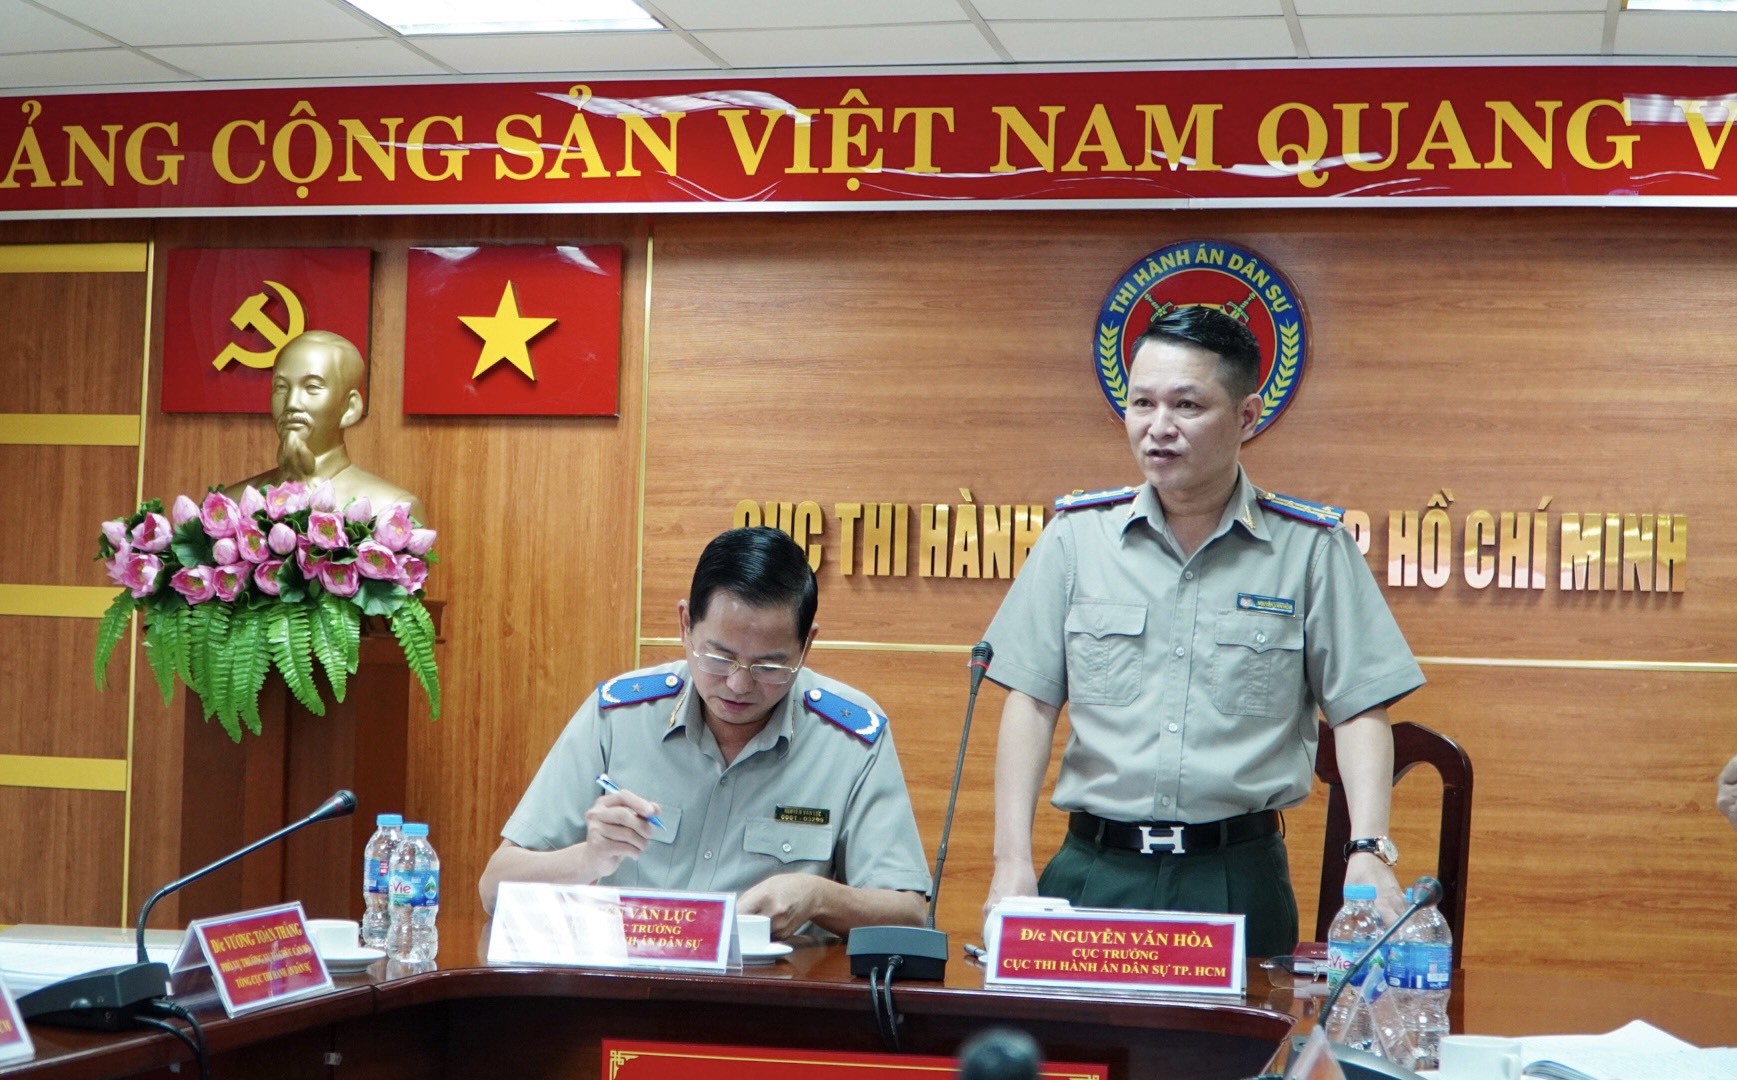 Đồng chí Nguyễn Văn Hoà, Cục trưởng phát biểu tại buổi làm việc với Tổng cục THADS